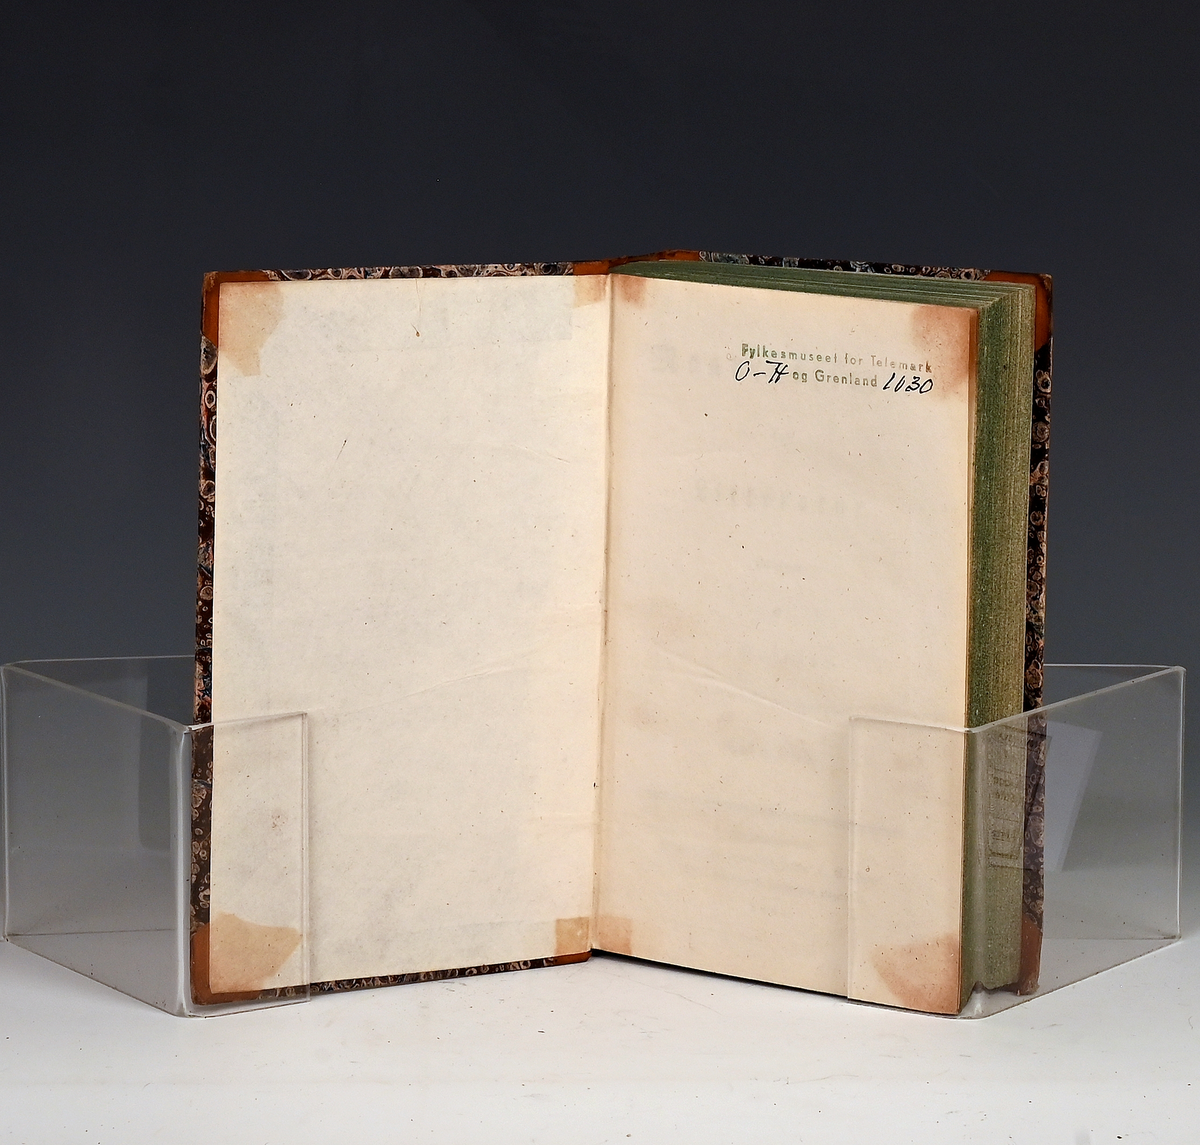 Maanedsskrift for litteratur. Sjette bind. Kbhv. 1831.